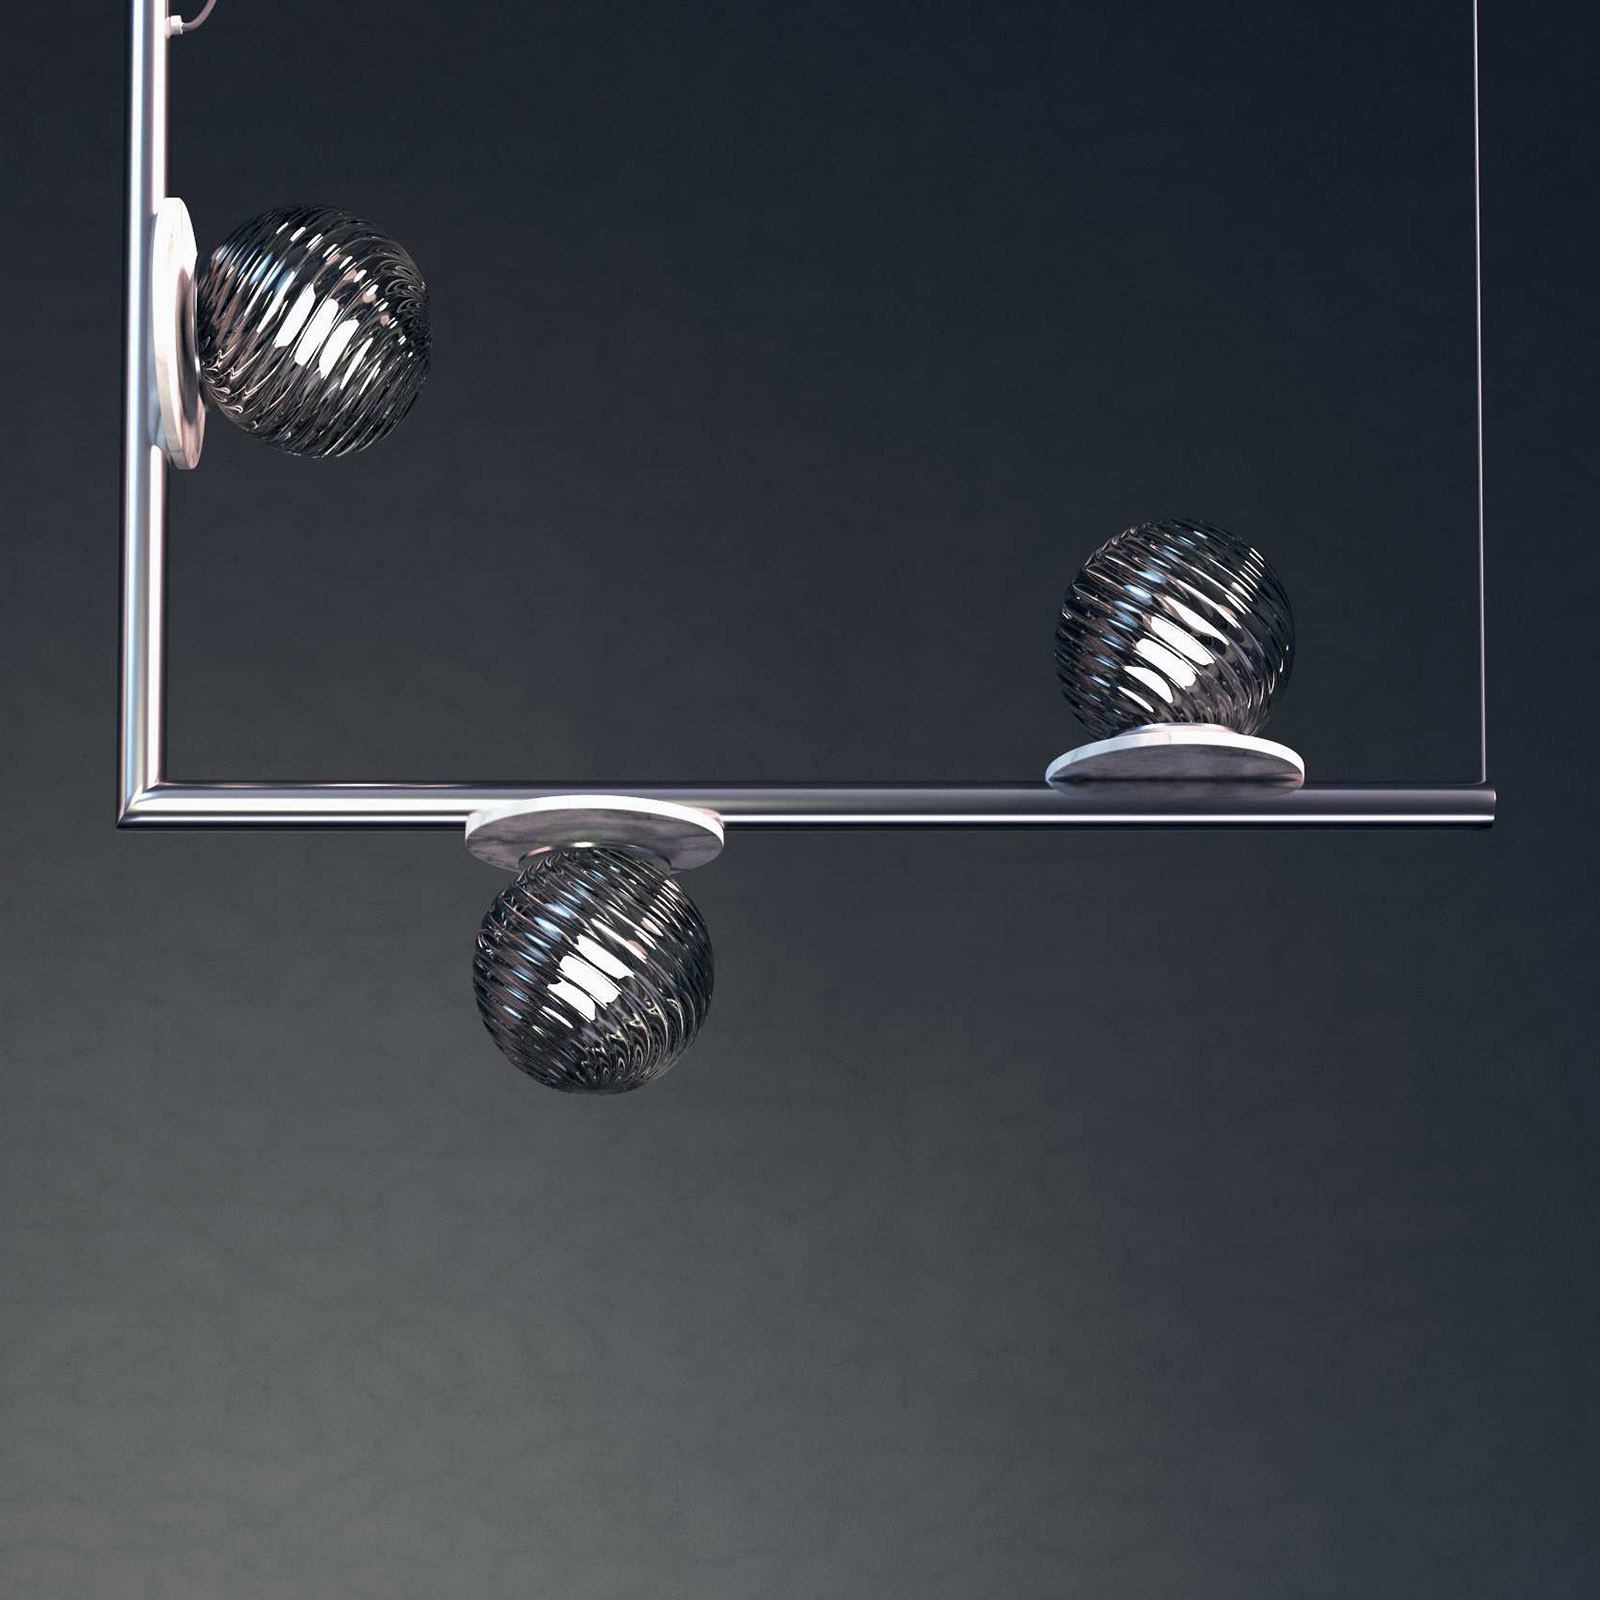 Dreiflammiger Design-Leuchter mit Murano-Glas und Alabaster AFRODITE: Murano-Design-Leuchter, hier Modell 1 in der Oberfläche „01 silber glänzend“ und grauem Rauchglas